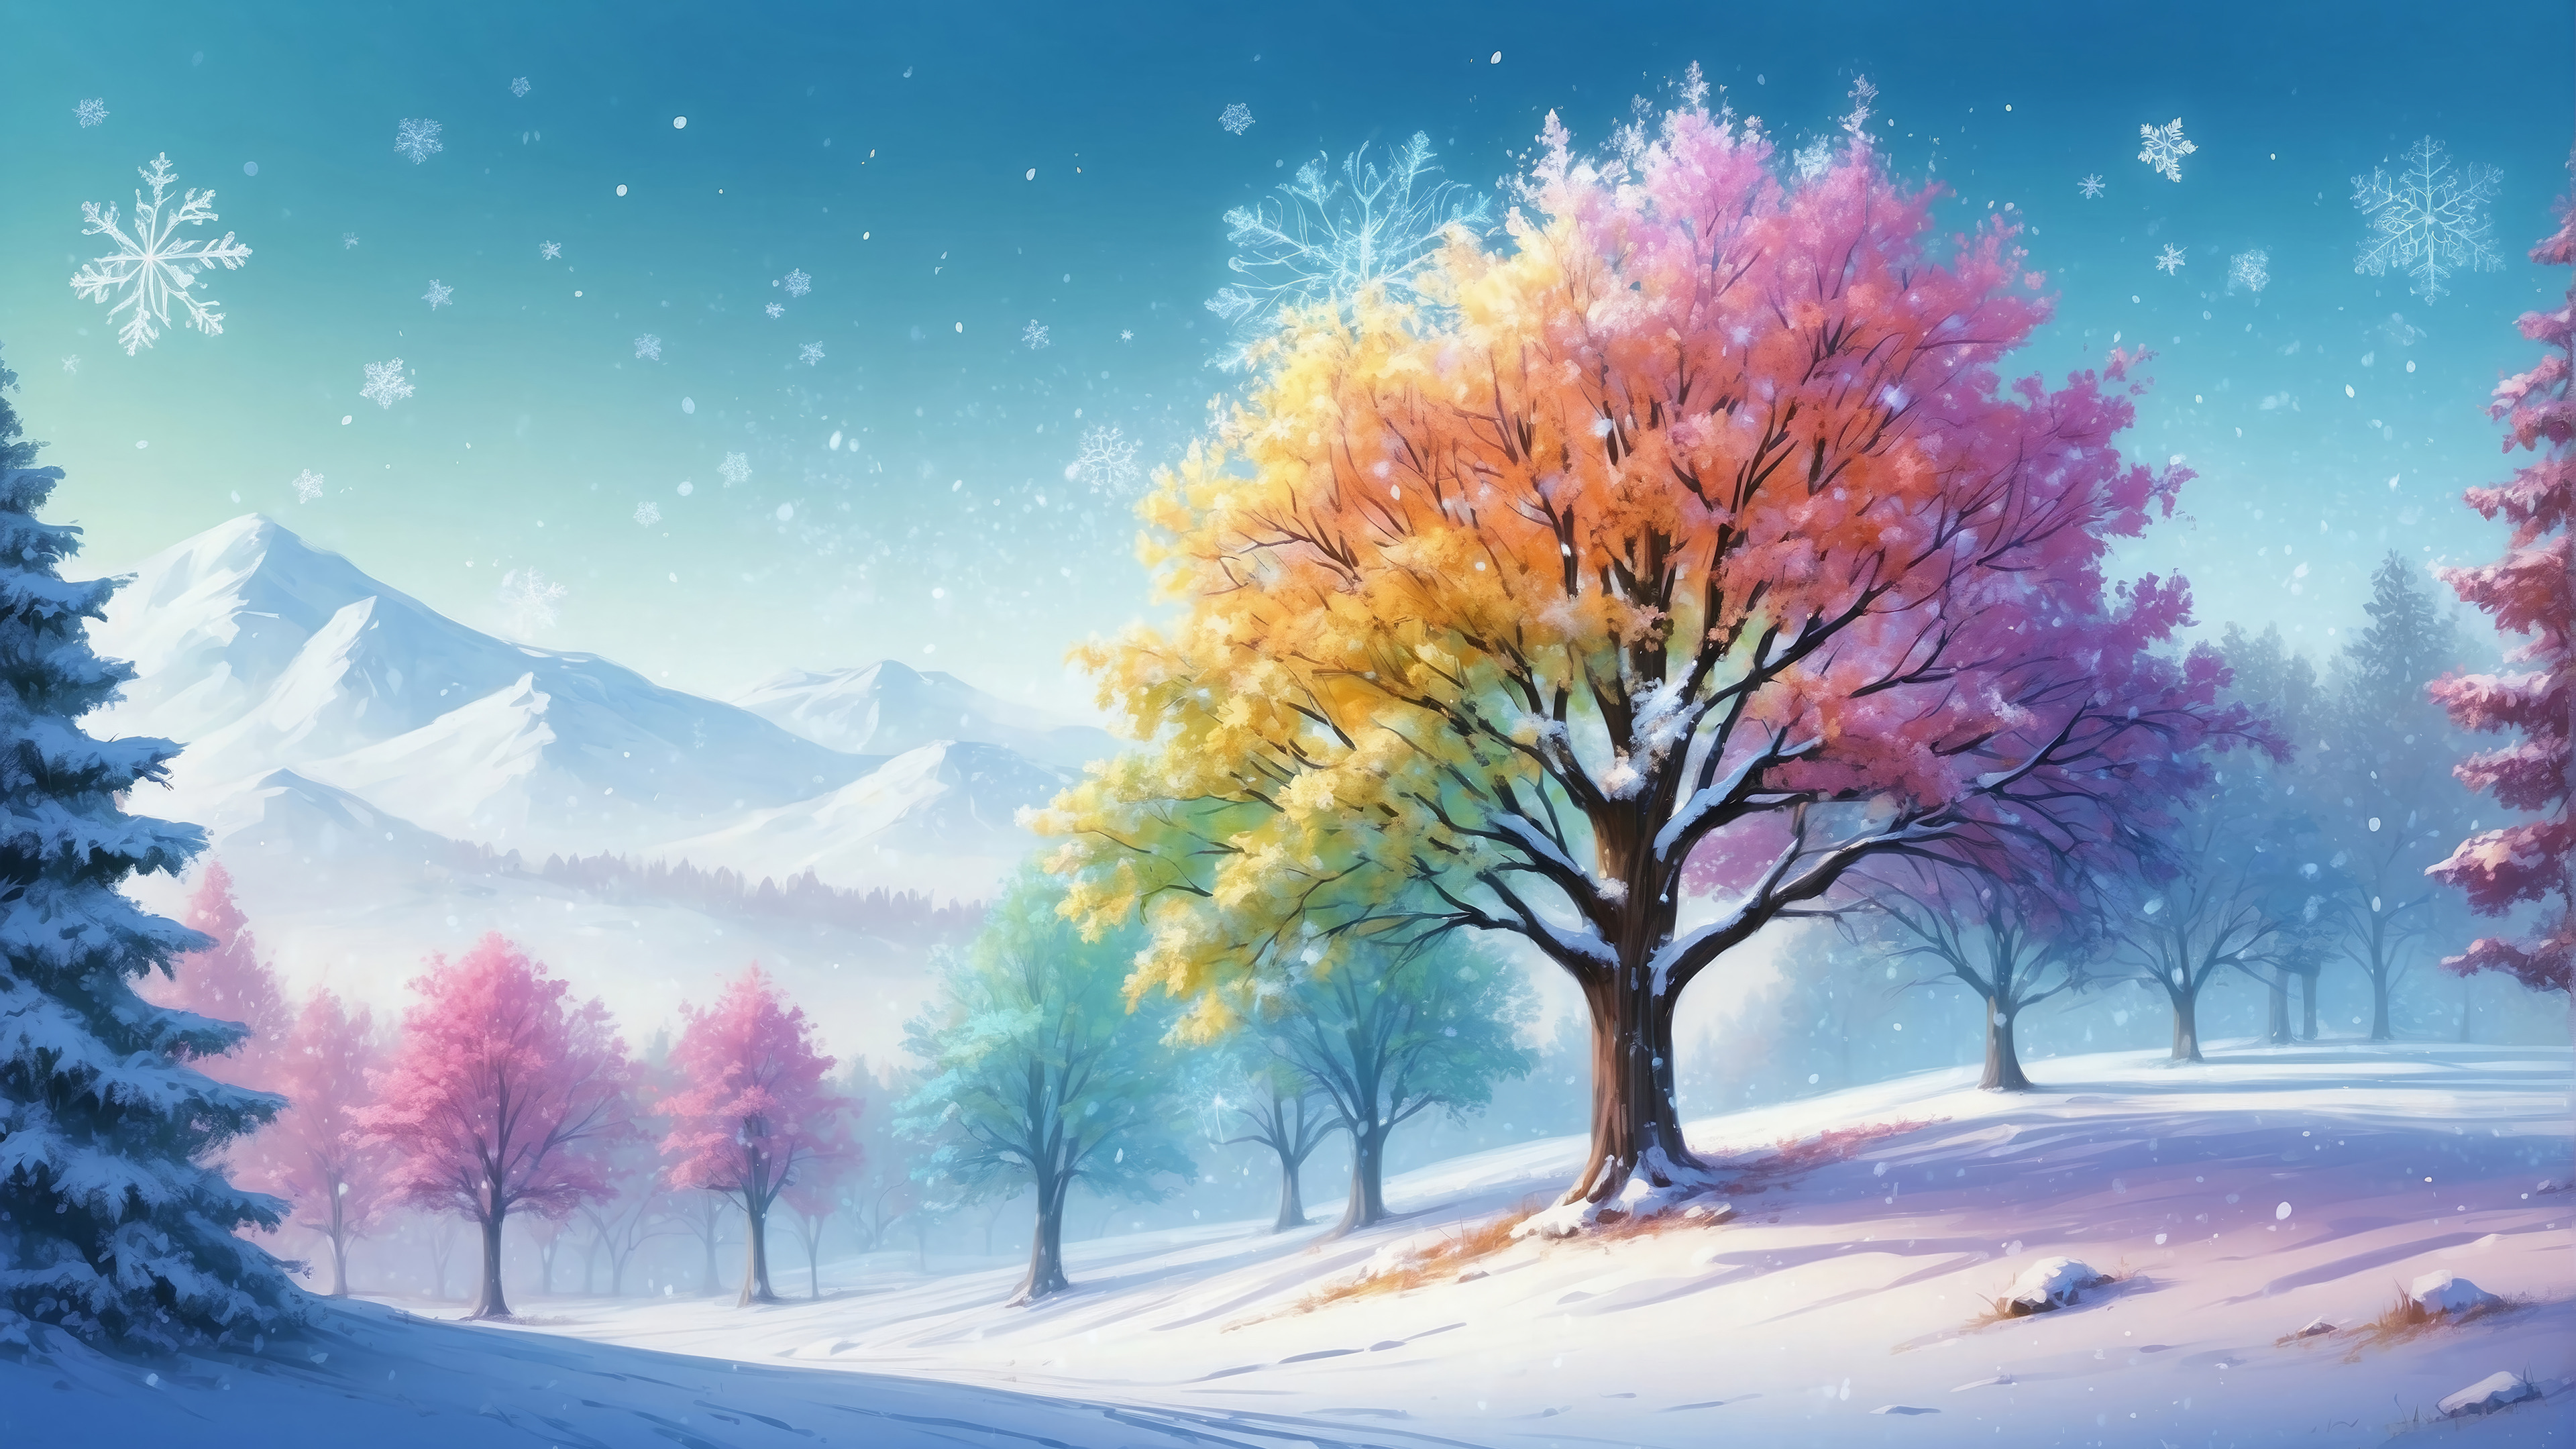 Fondos de pantalla Invierno Nieve árbol colorido